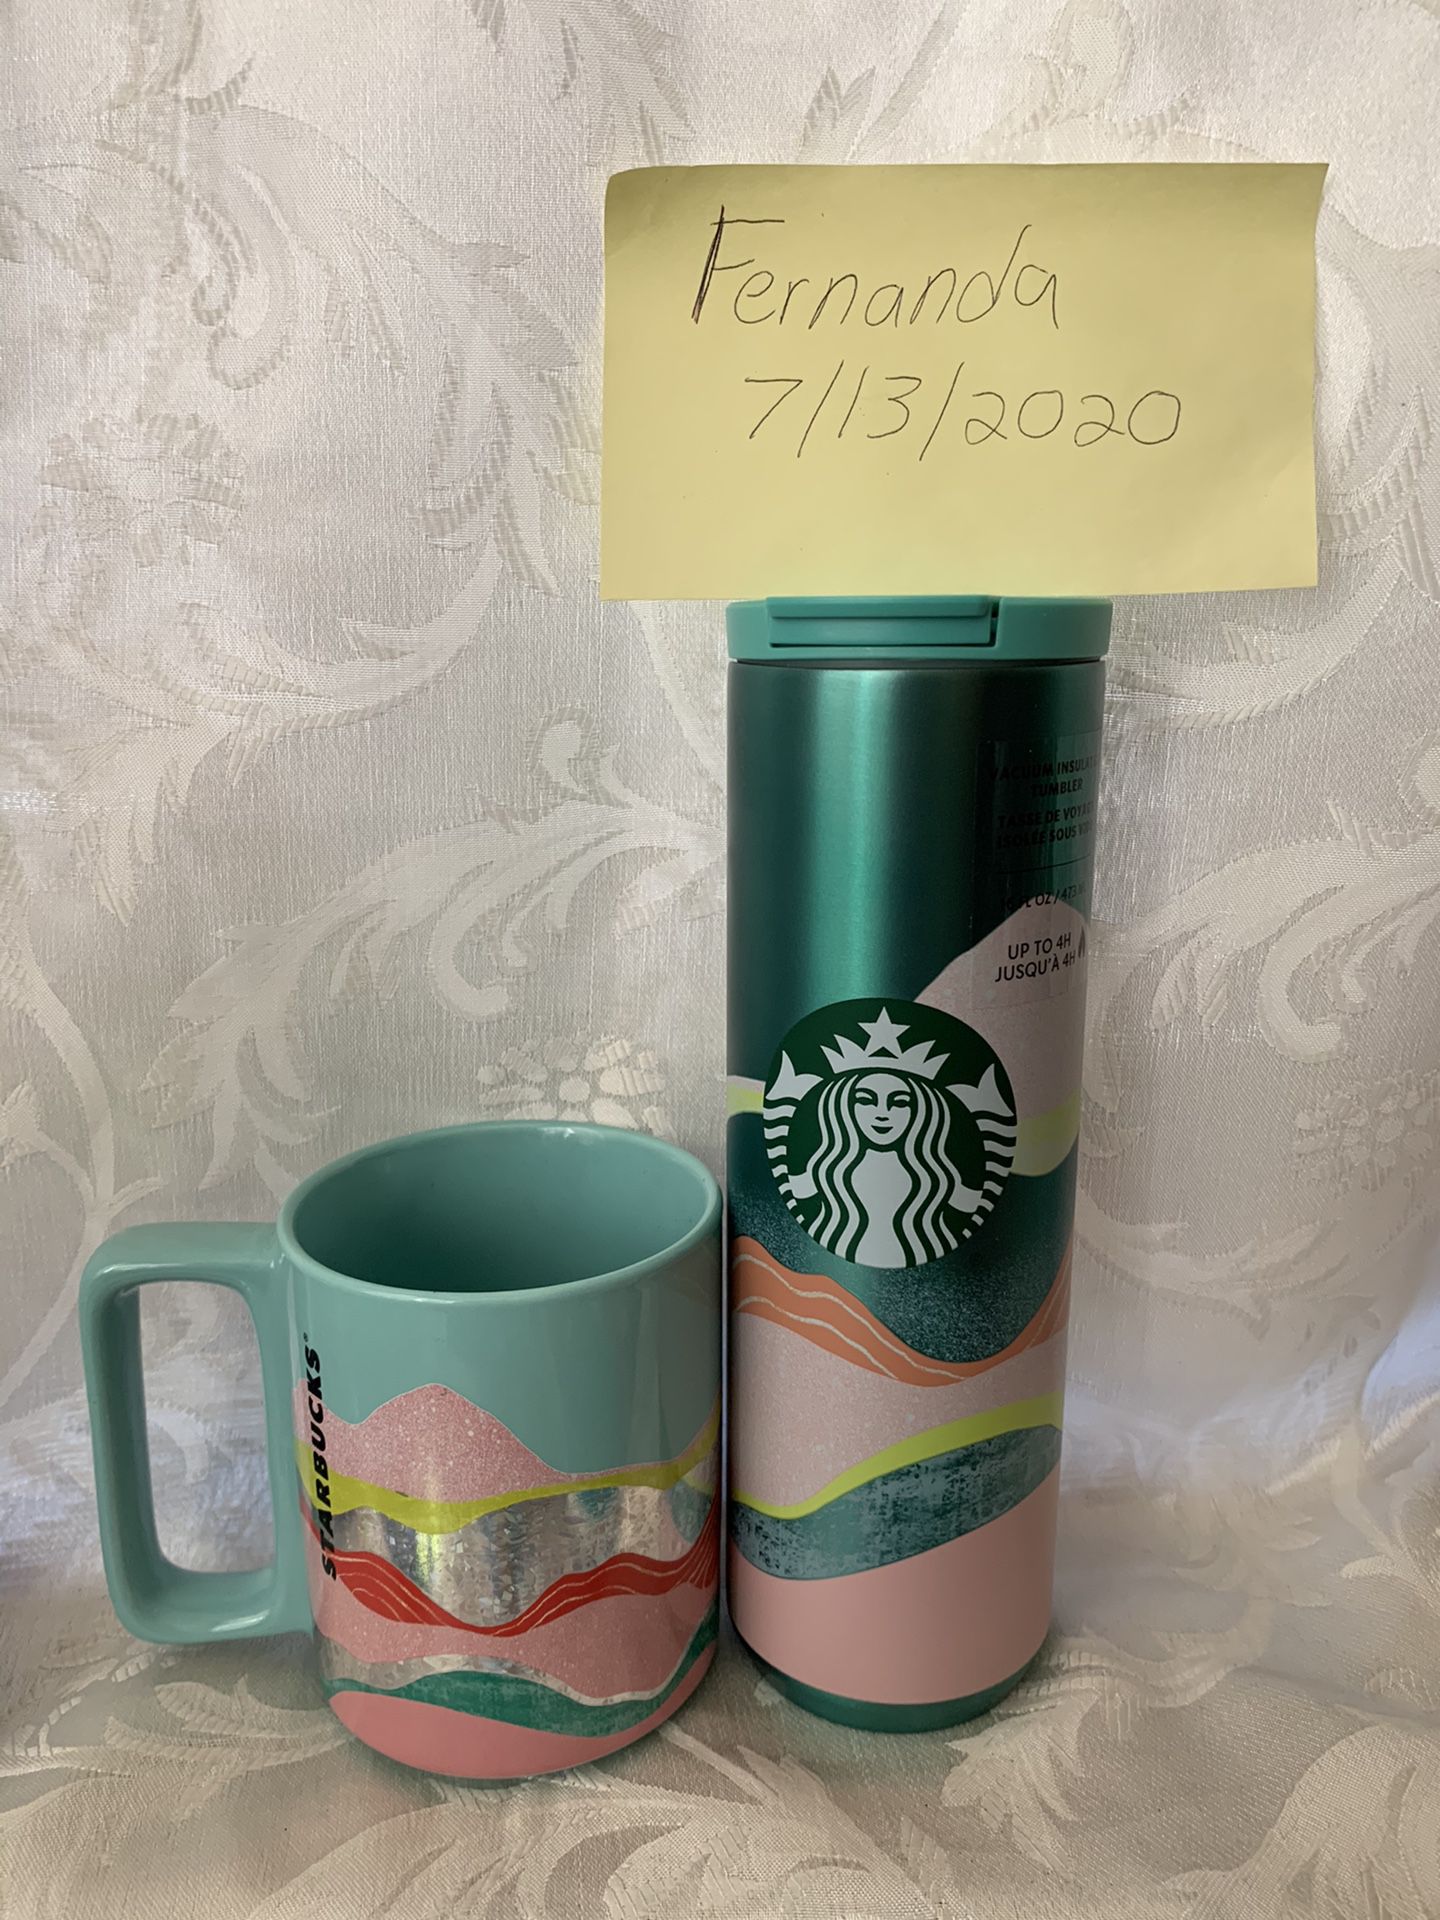 Starbucks insulated Cup and mug 💕